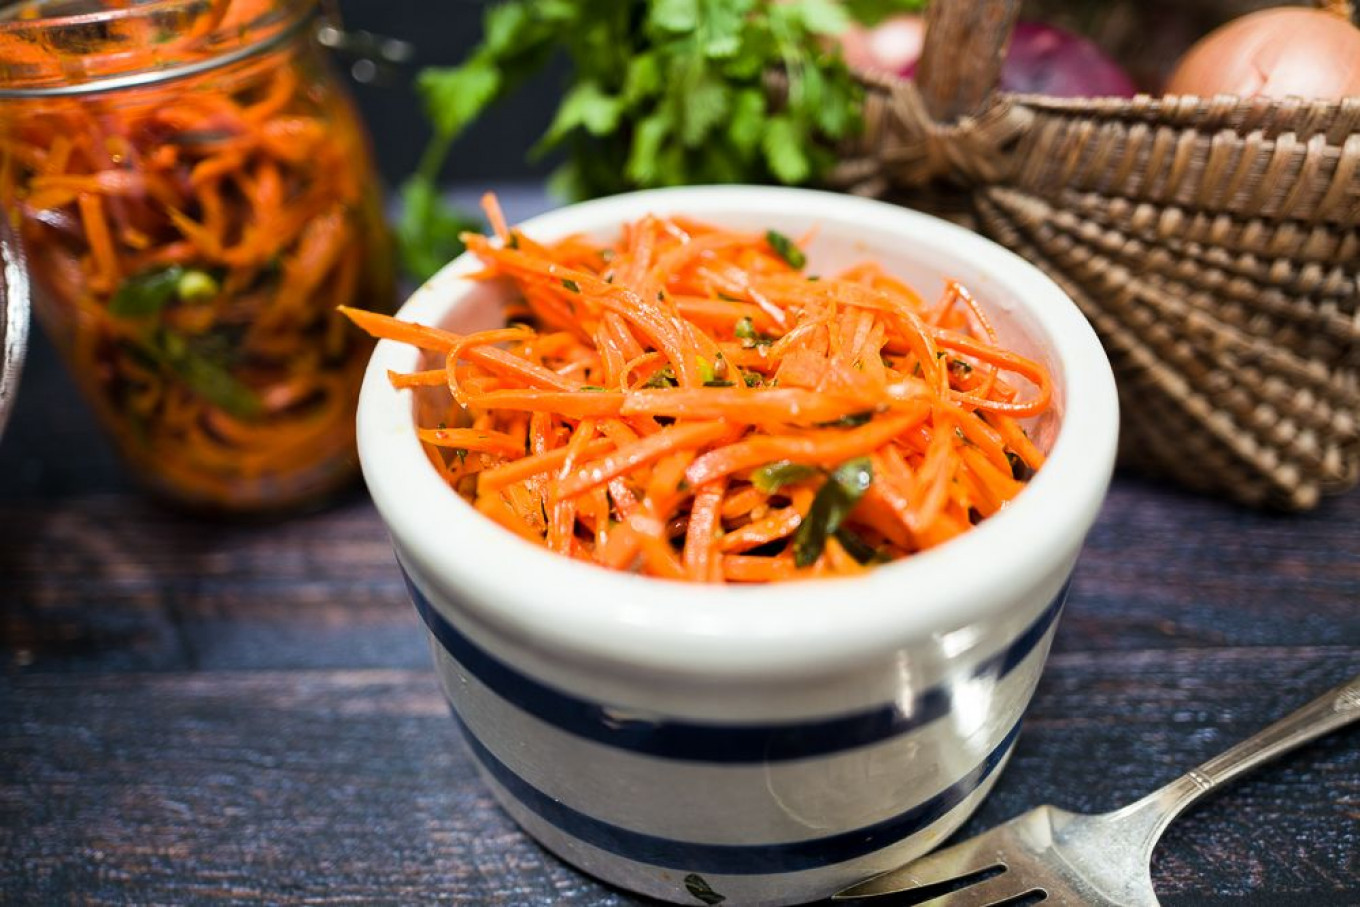 Taming Morkovcha — Russia’s Beloved Korean Carrot Salad